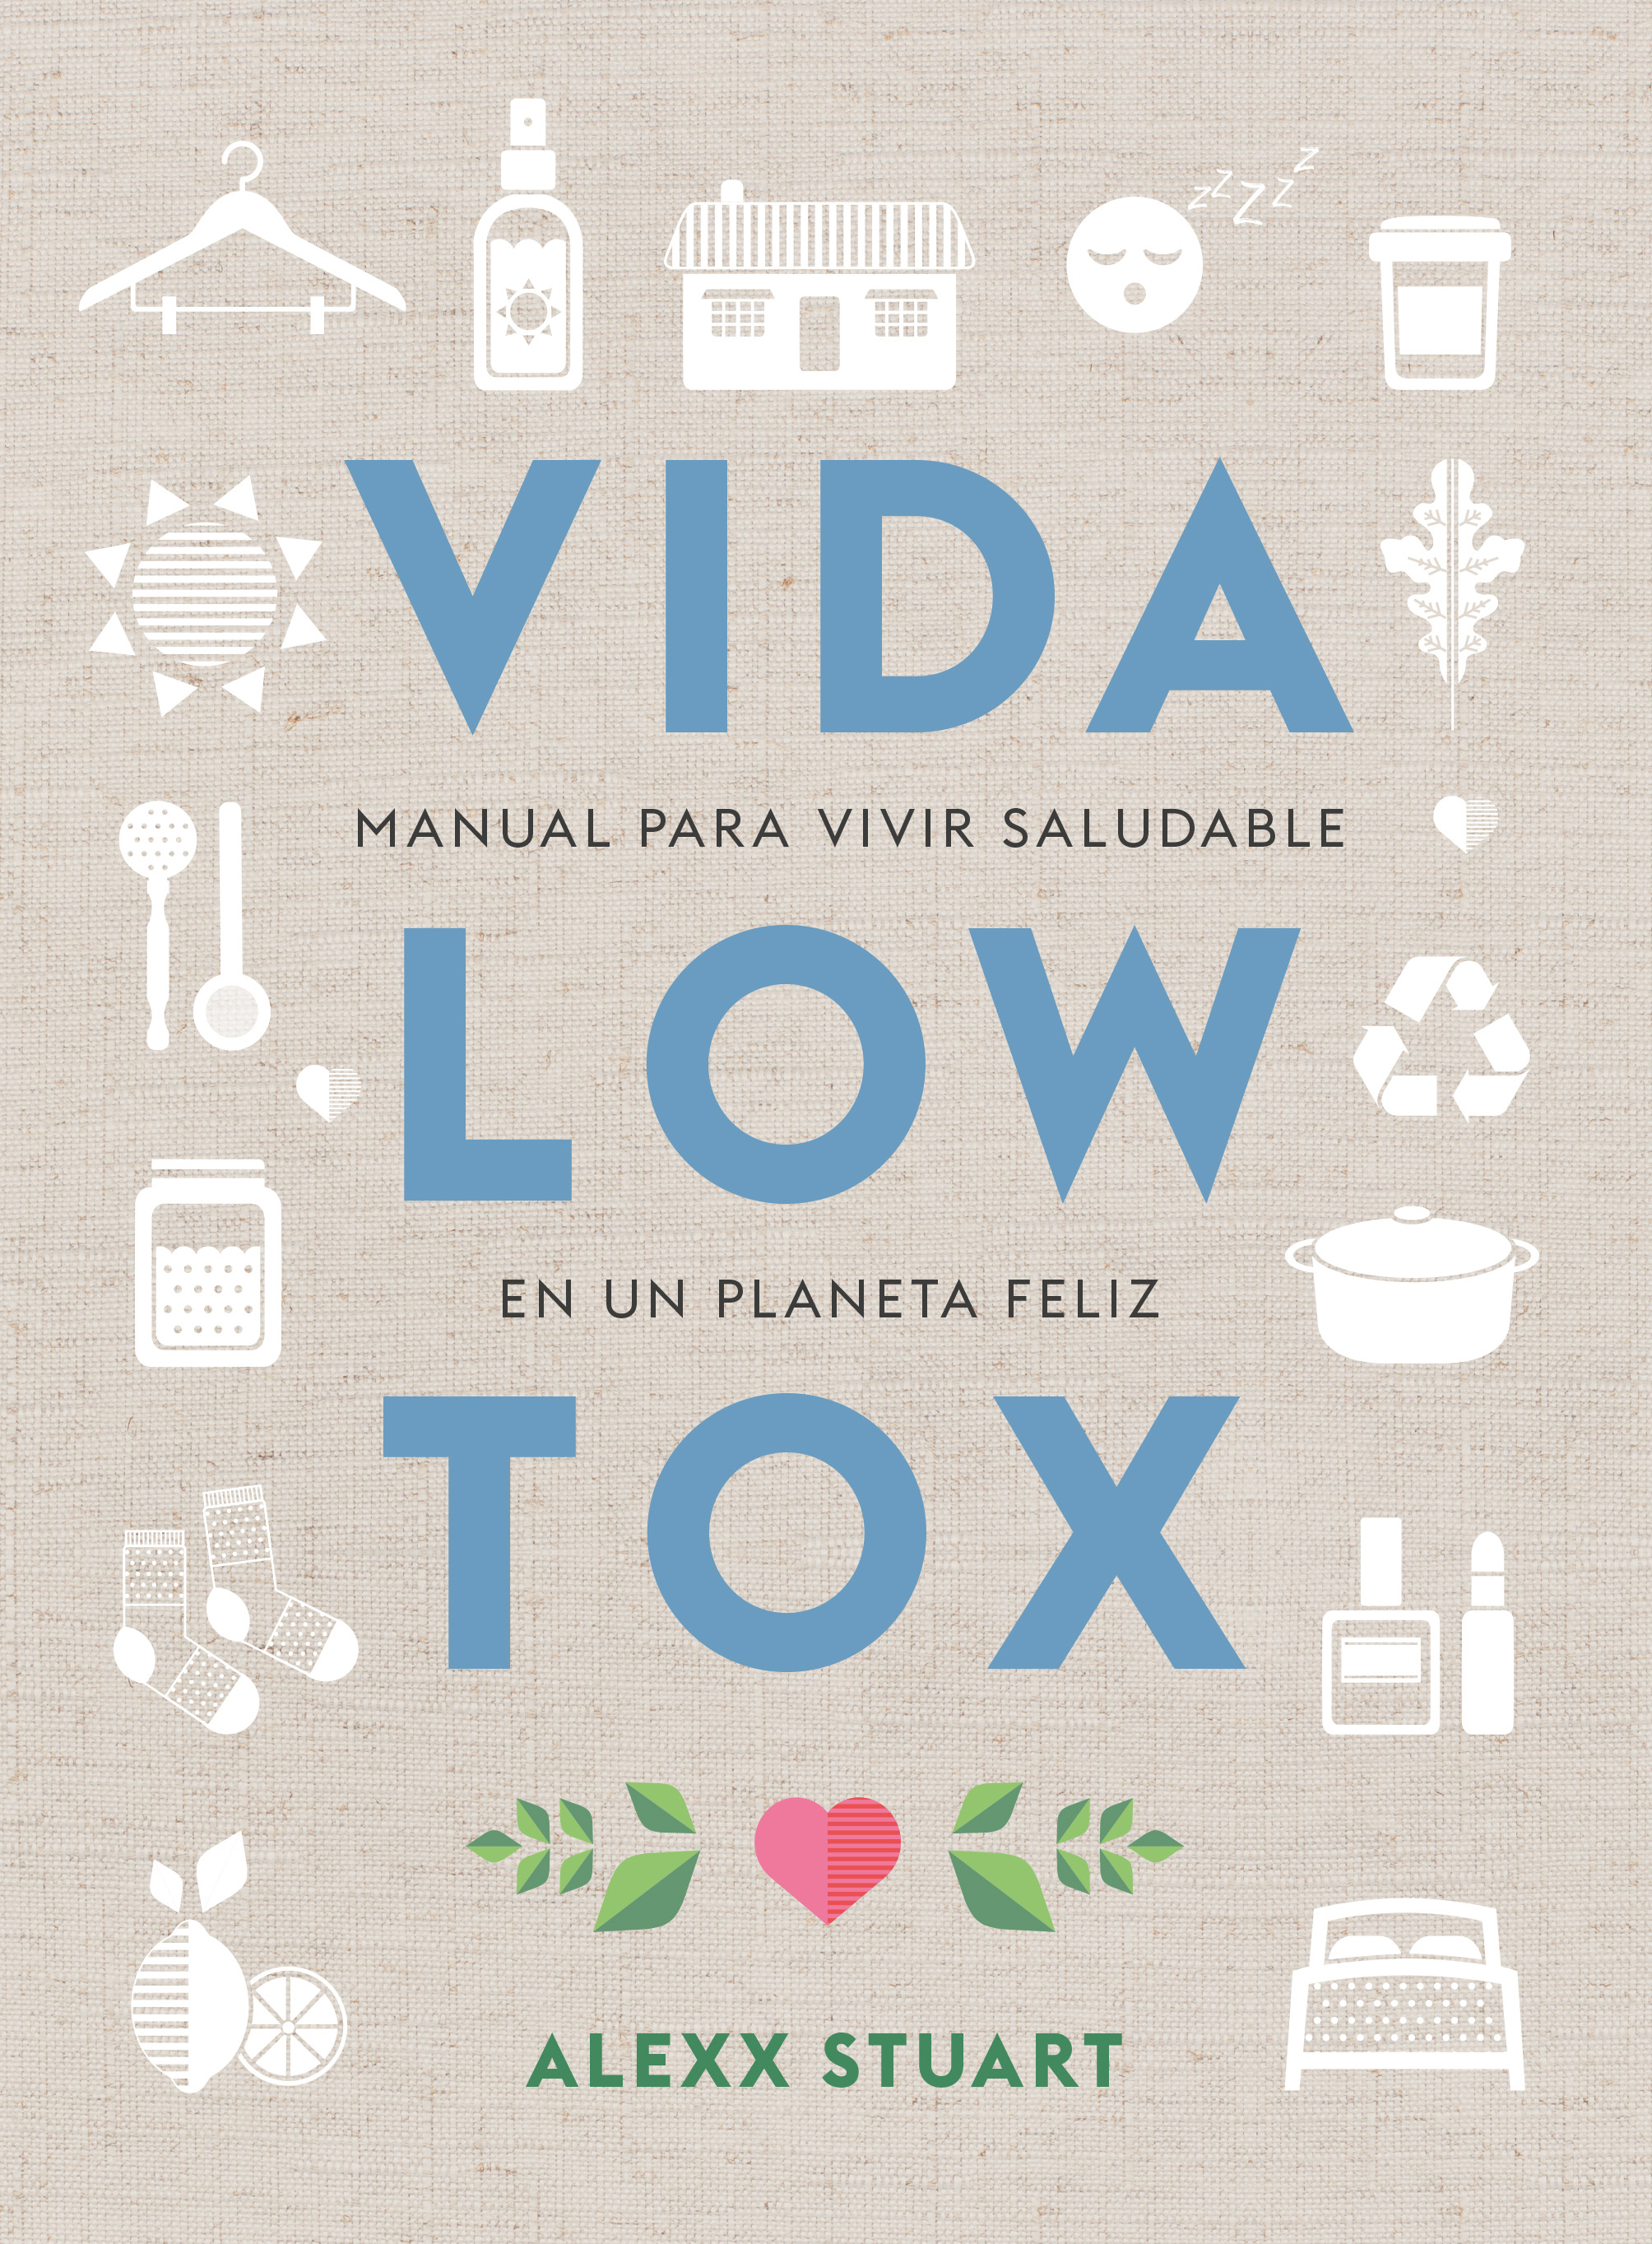 Vida low tox   «Manual para vivir saludable en un planeta feliz» (9788412053722)